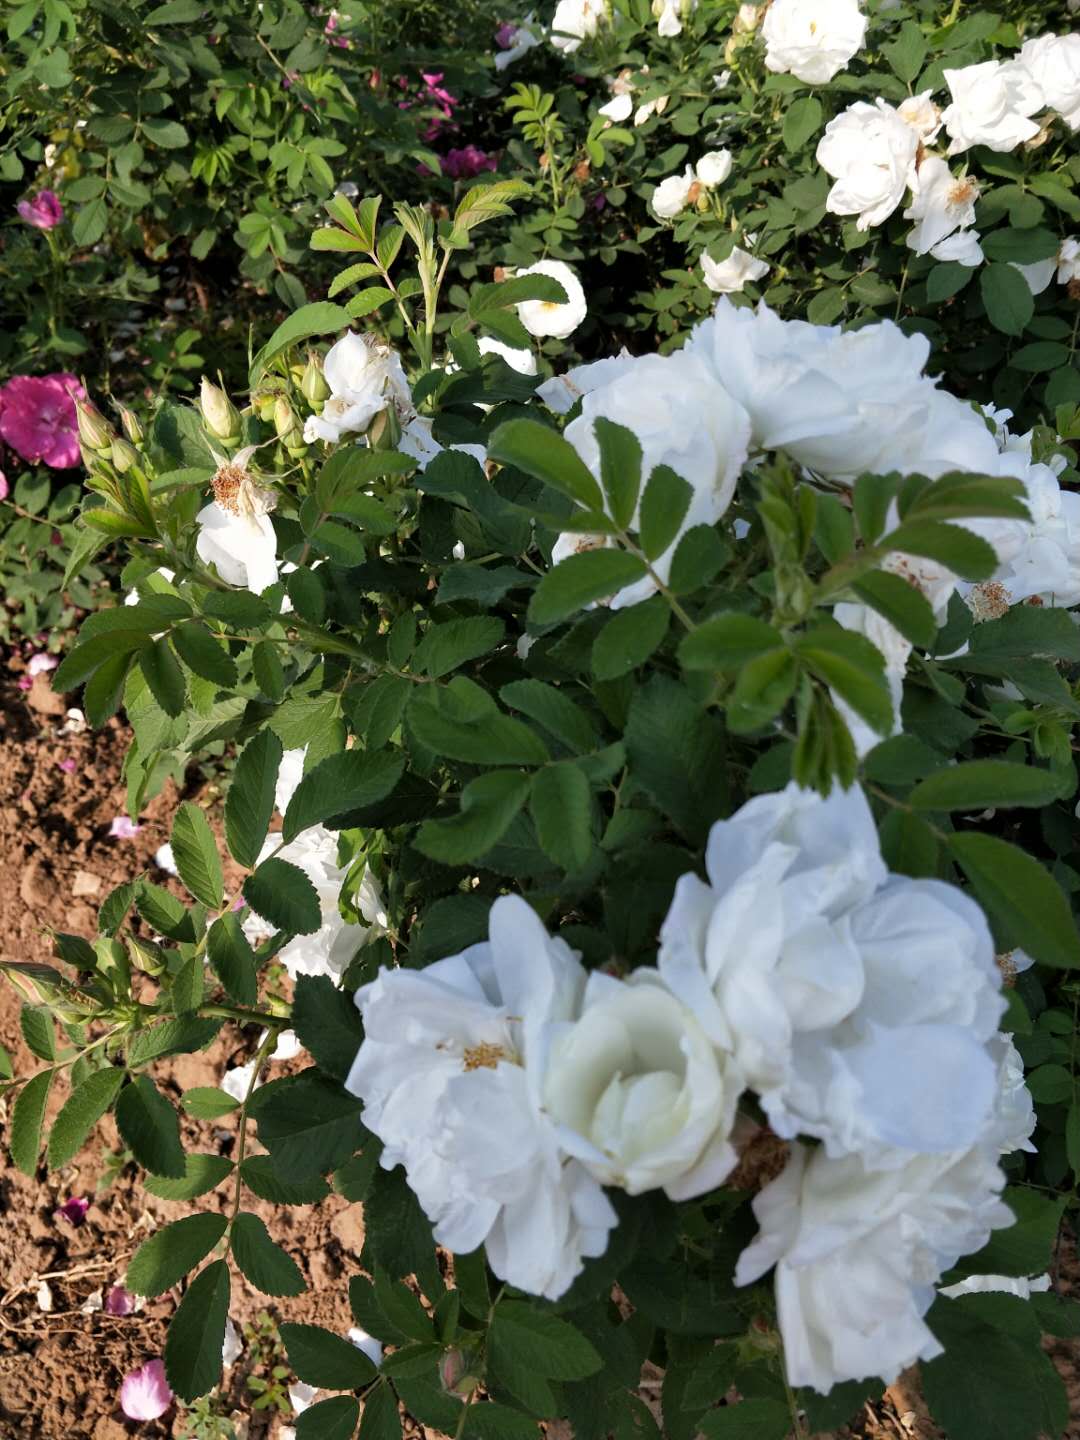 白色重瓣玫瑰苗 山东白色玫瑰种苗批发商 大量供应白色玫瑰苗图片